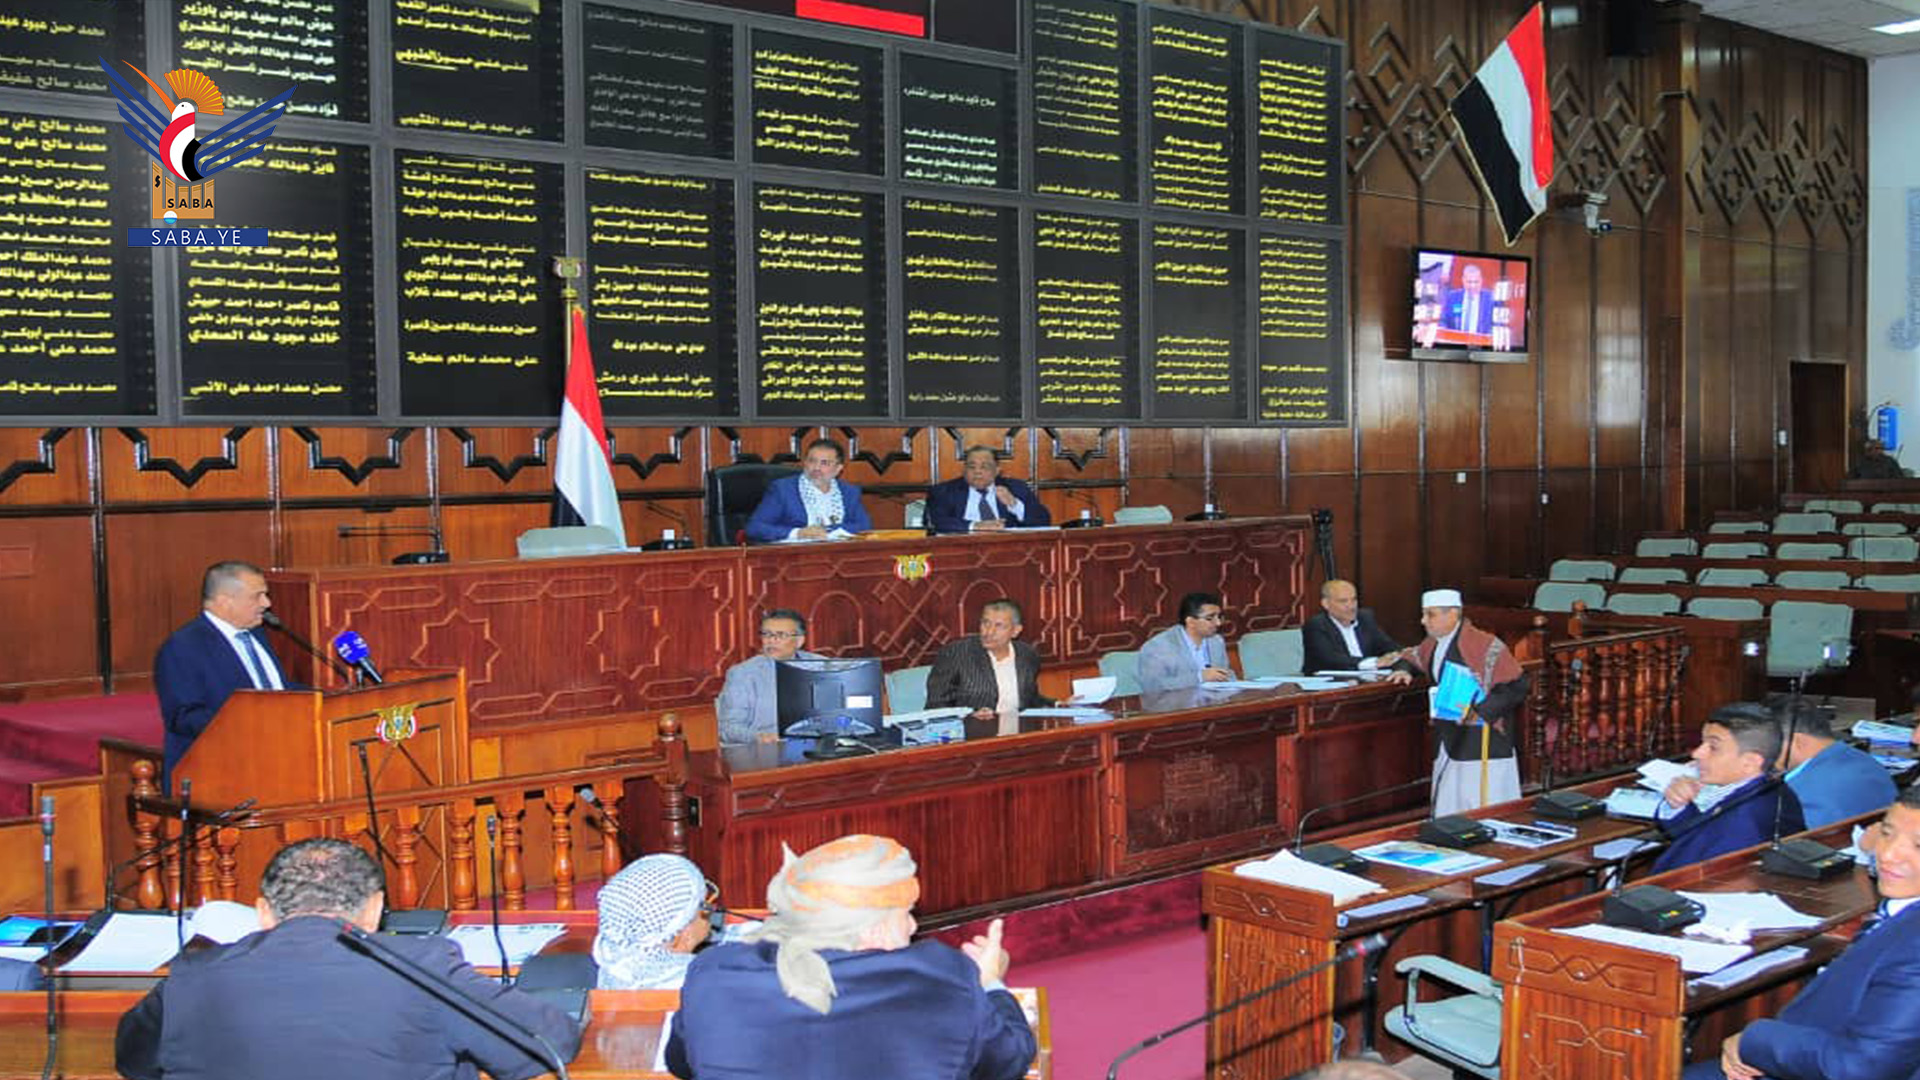 البرلمان يُحيّي صمود المقاومة الفلسطينية ويحث الشعوب العربية على التضامن معها ودعمها